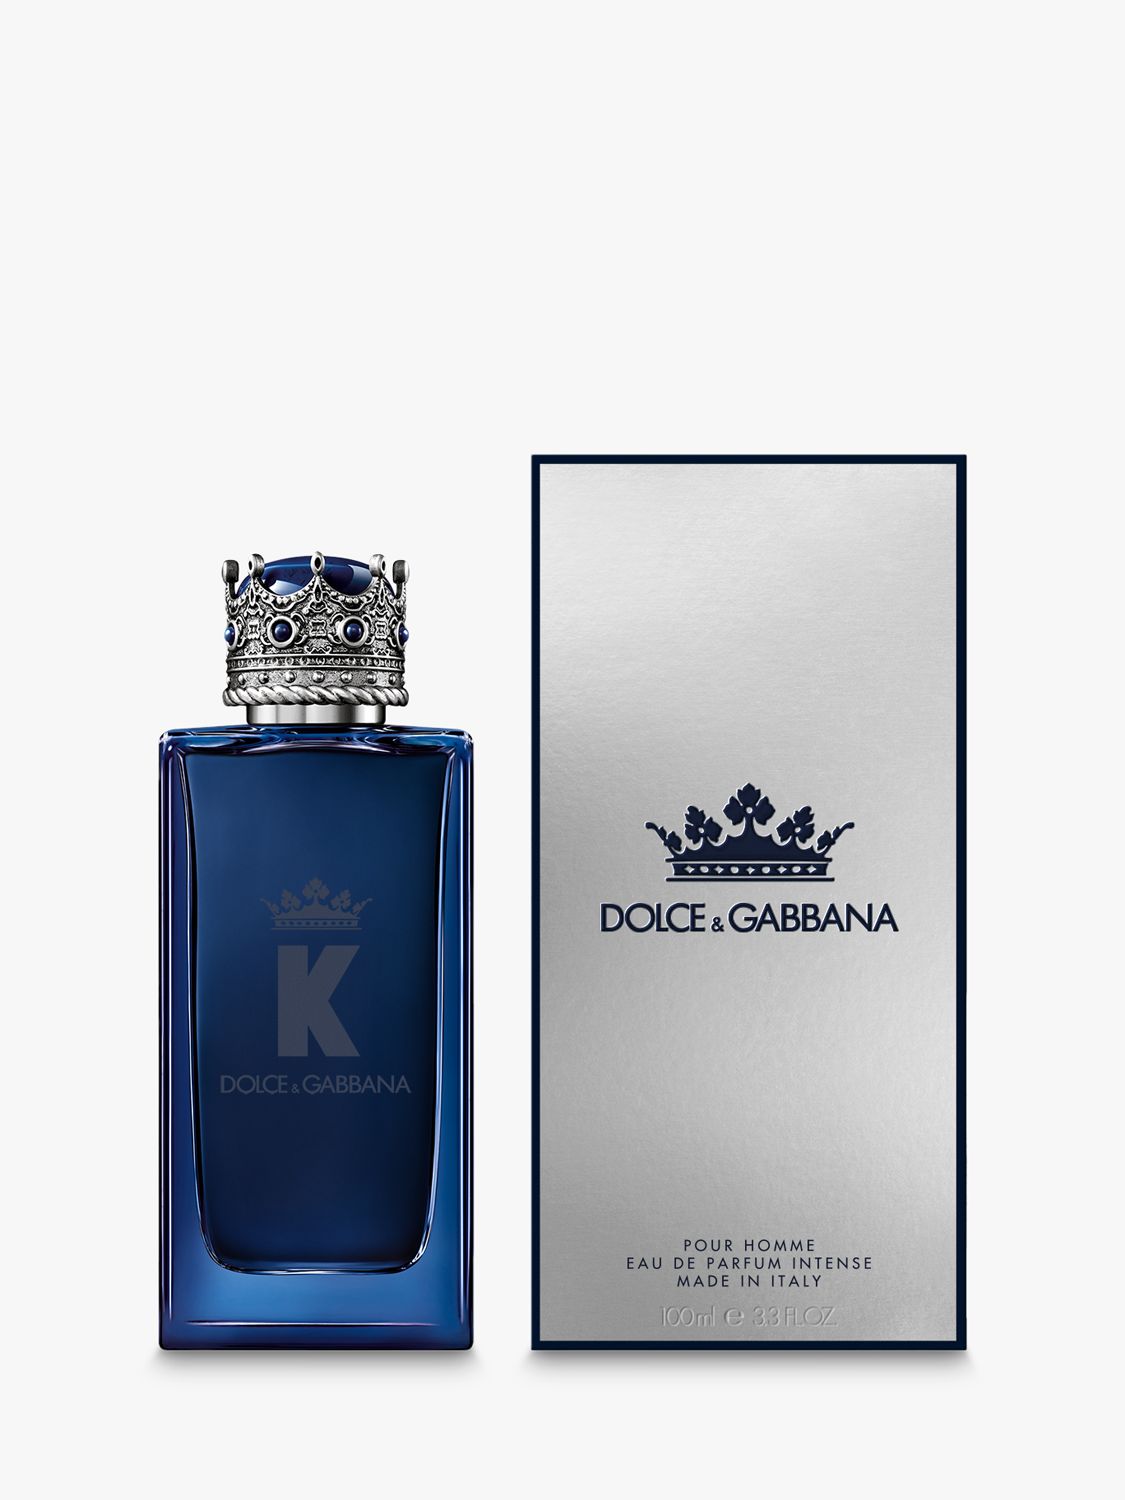 Dolce & Gabbana K by Dolce & Gabbana Eau de Parfum Intense, 100ml